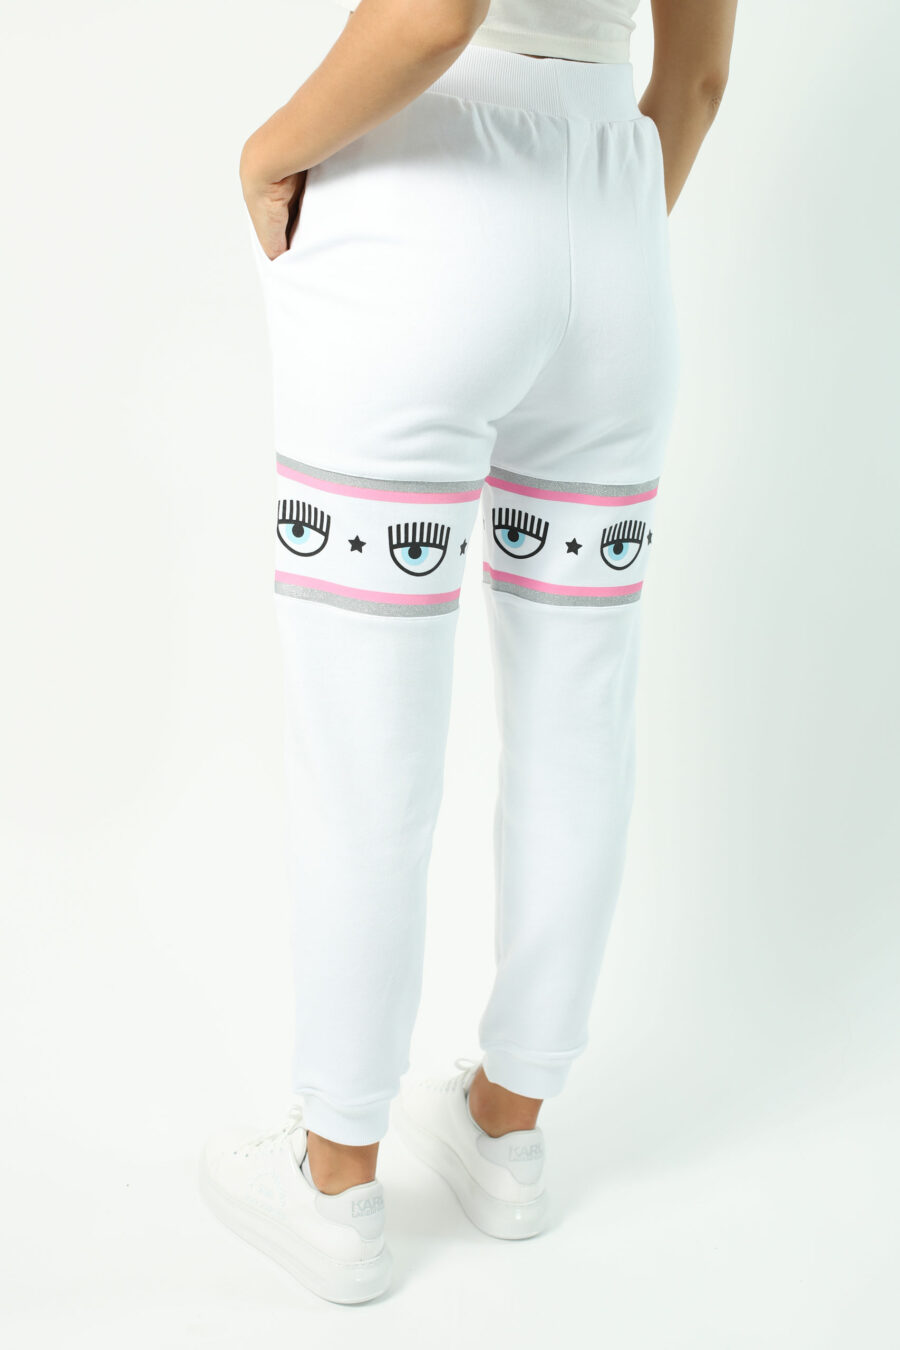 Pantalón de chándal blanco y logo en cinta rosa y plateado - Photos 2680